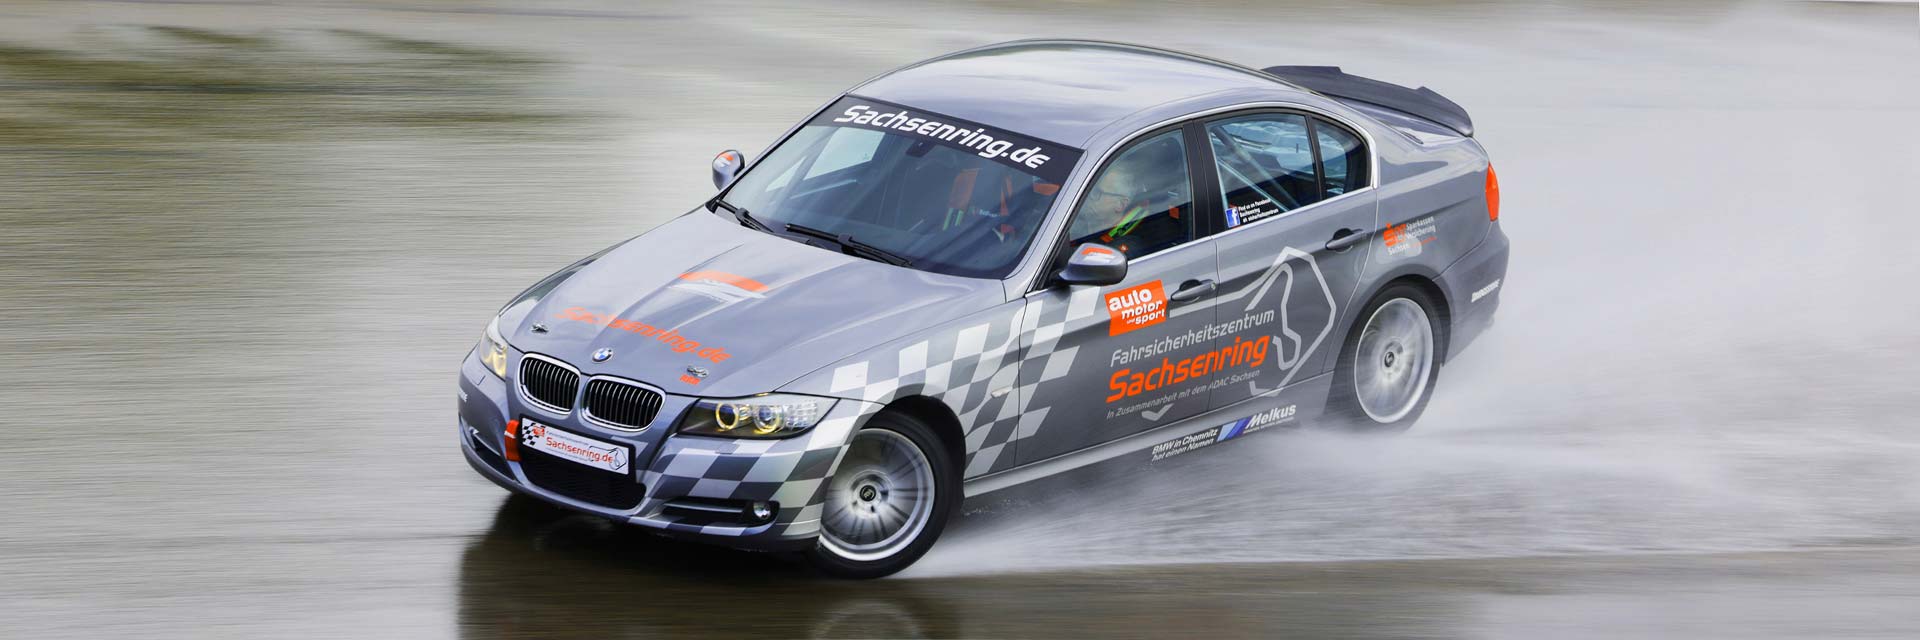 GEDLICH Racing - Car Control Training - Sachsenring